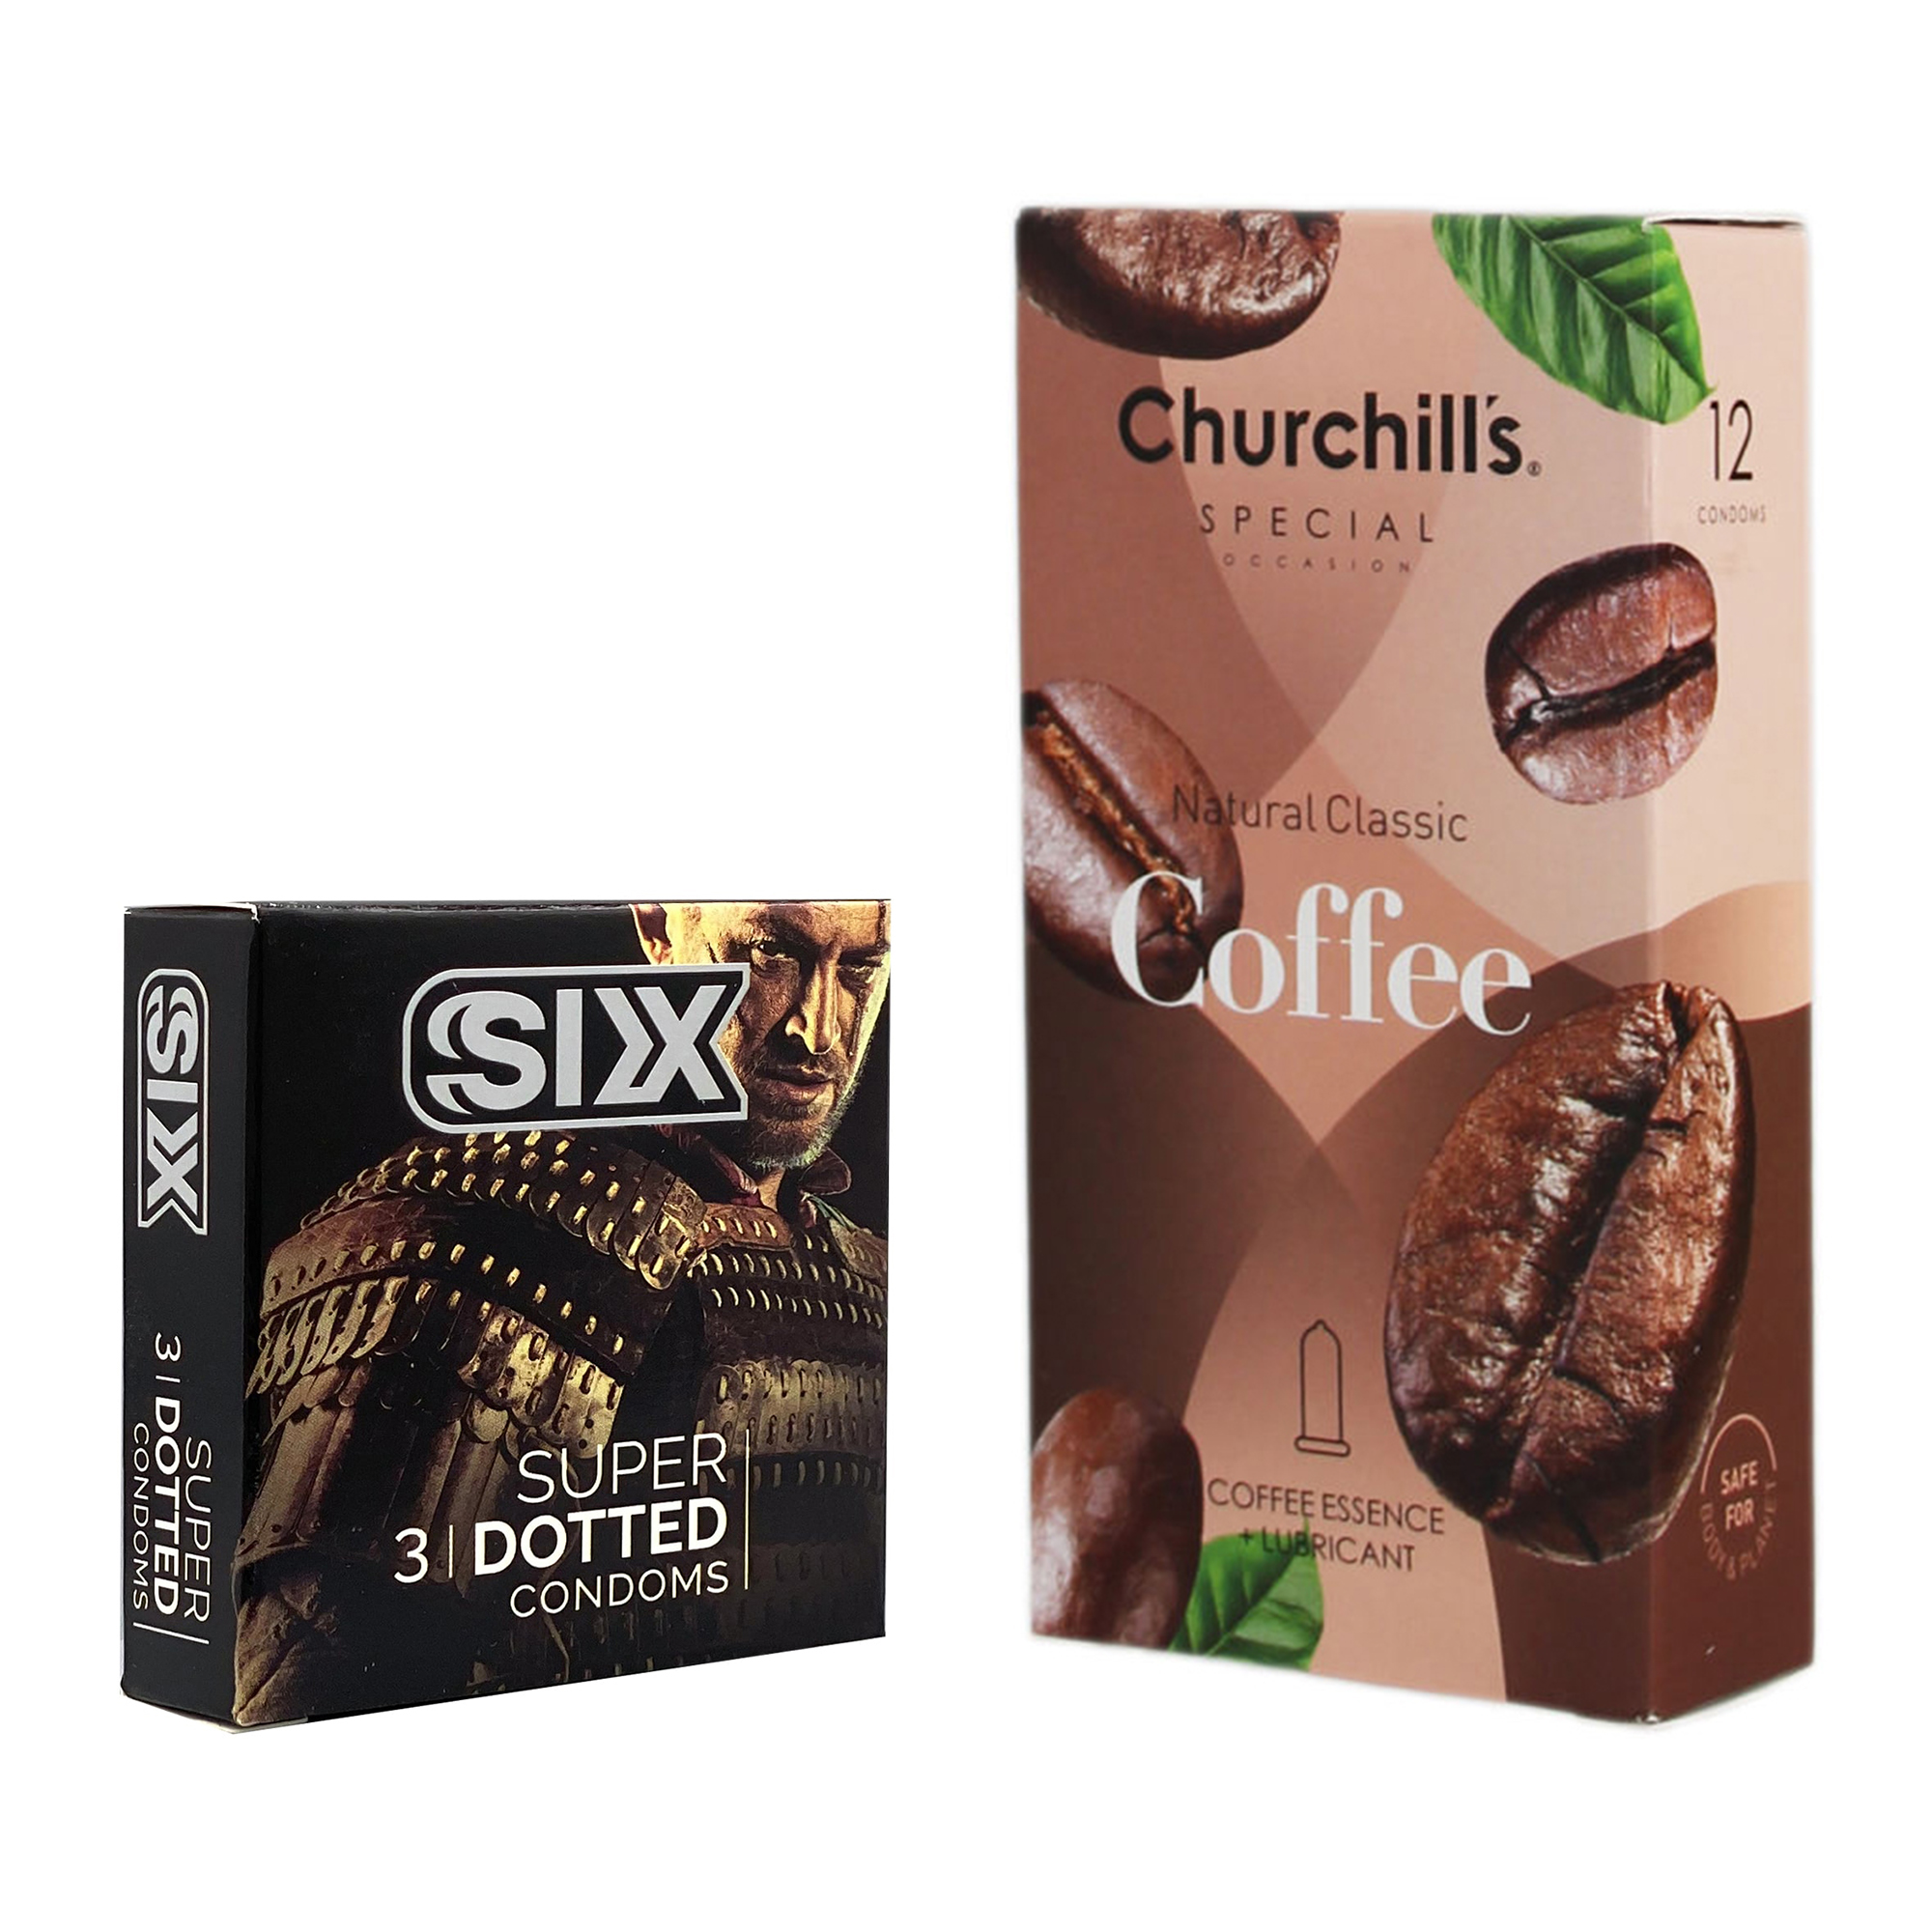 کاندوم چرچیلز مدل Coffee بسته 12 عددی به همراه کاندوم سیکس مدل خاردار بسته 3 عددی 